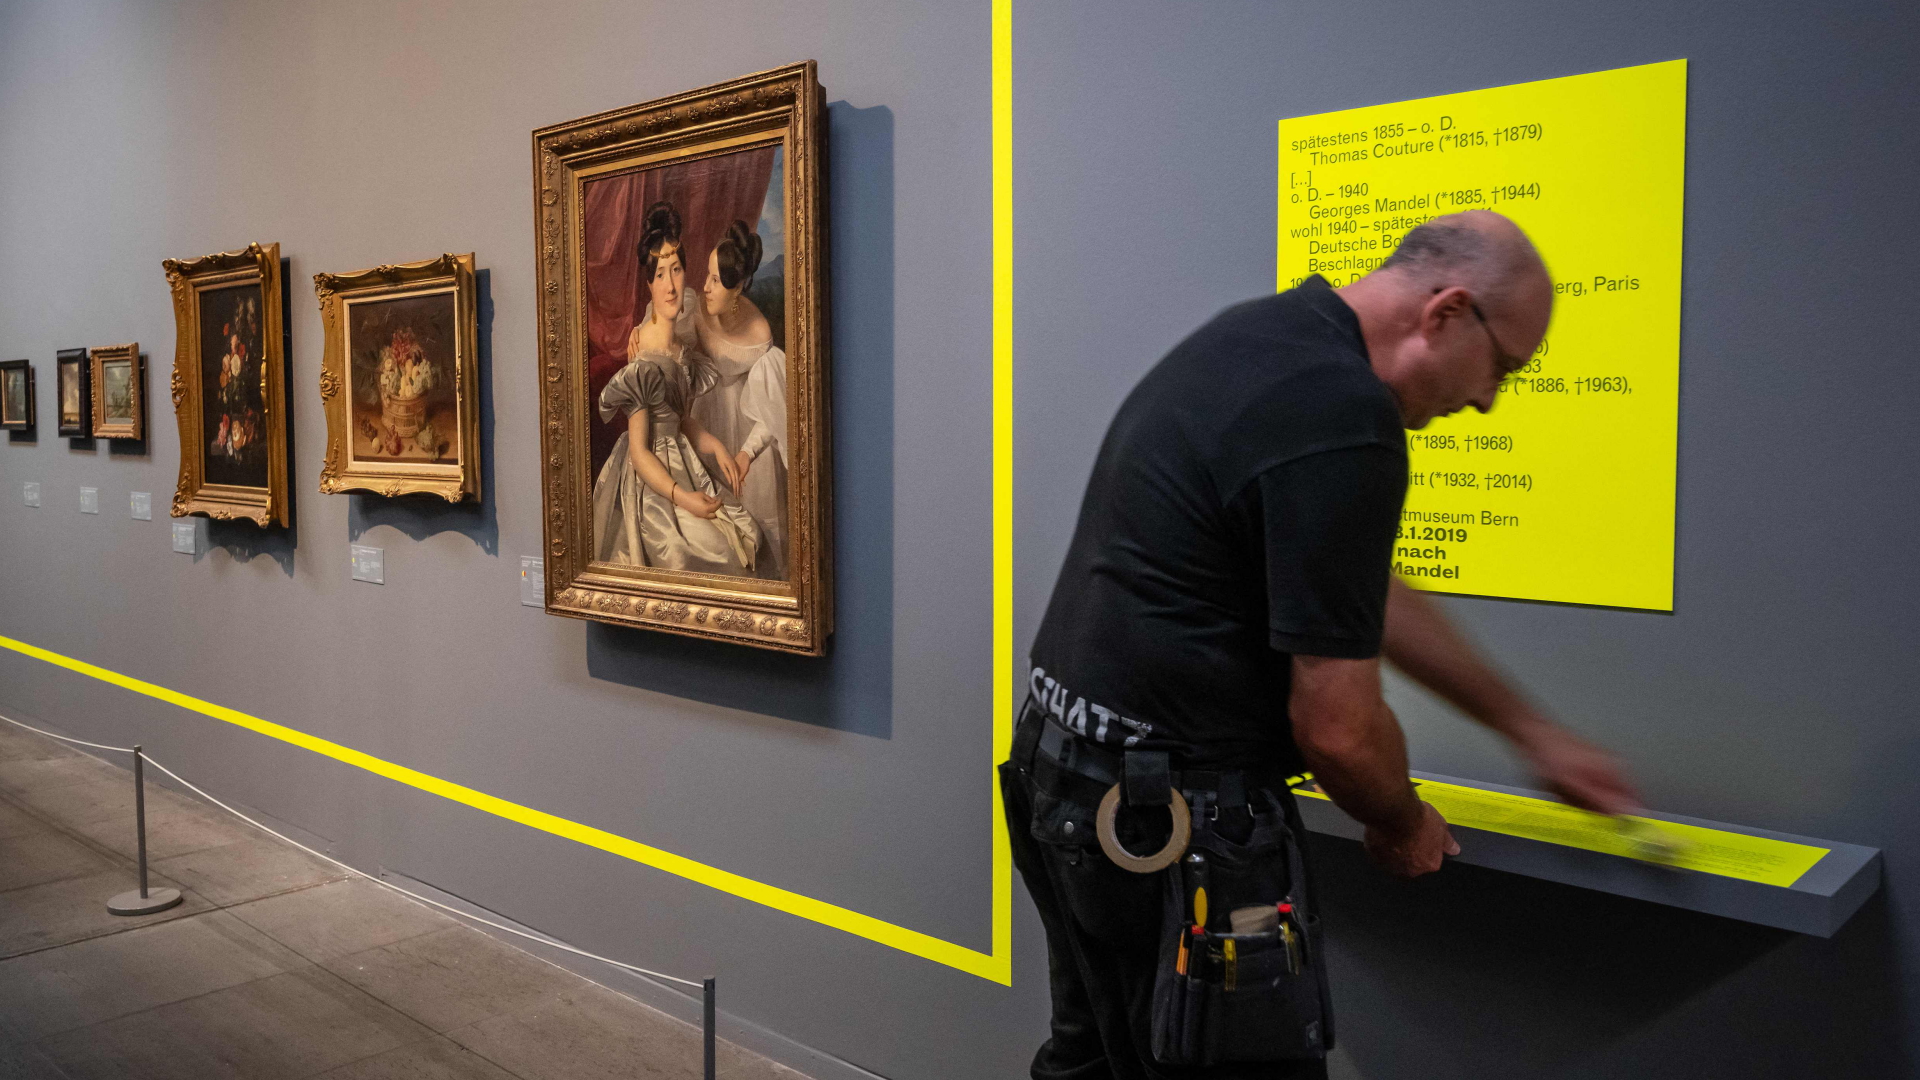 Ein Mitarbeiter bringt im Kunstmuseum Bern einen neongelben Rahmen an einer Wand neben Gemälden an. Der Rahmen verdeutlicht, dass einige Werke der Ausstellung "Gurlitt. Eine Bilanz" bereits an ihre rechtmäßigen Besitzer zurückgegeben wurden. | AFP